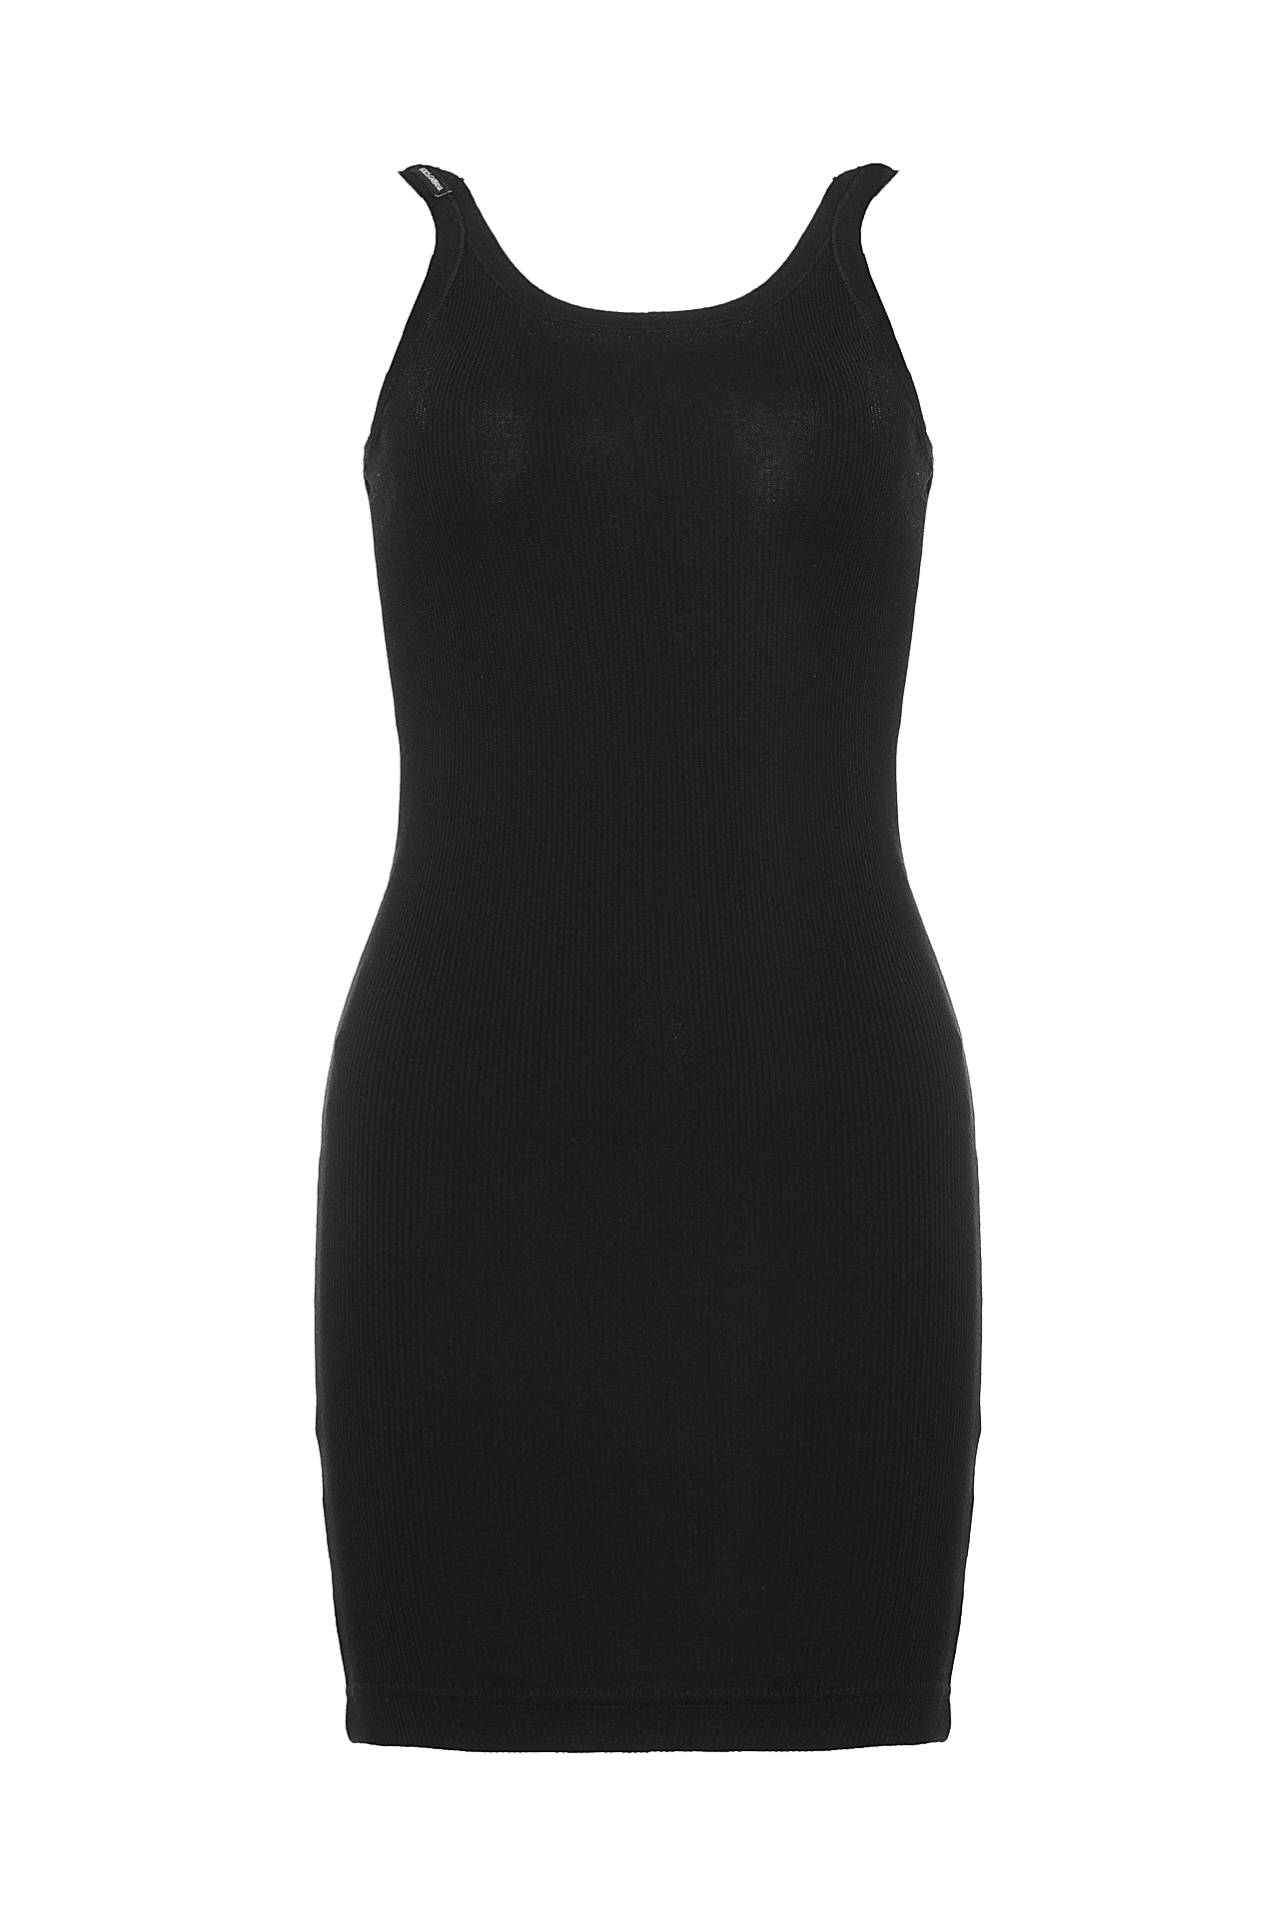 Одежда женская Майка DOLCE & GABBANA (QPRDT2Q2025/16.2). Купить за 13900 руб.